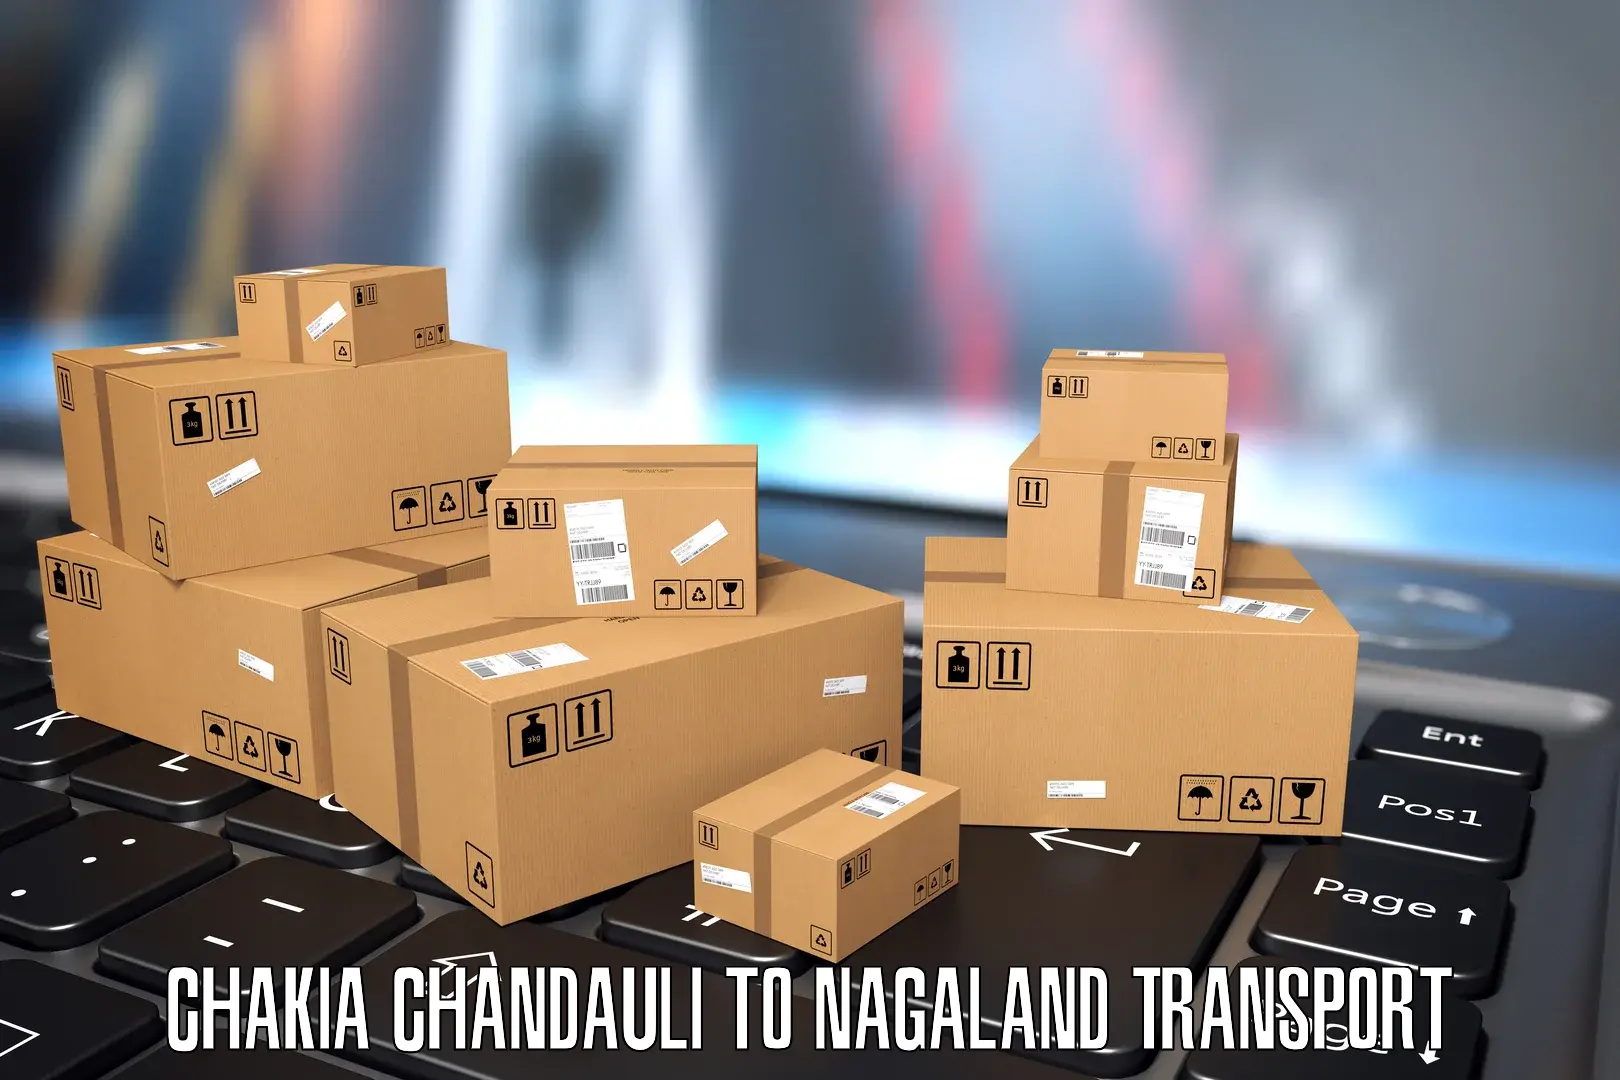 Furniture transport service Chakia Chandauli to Wokha